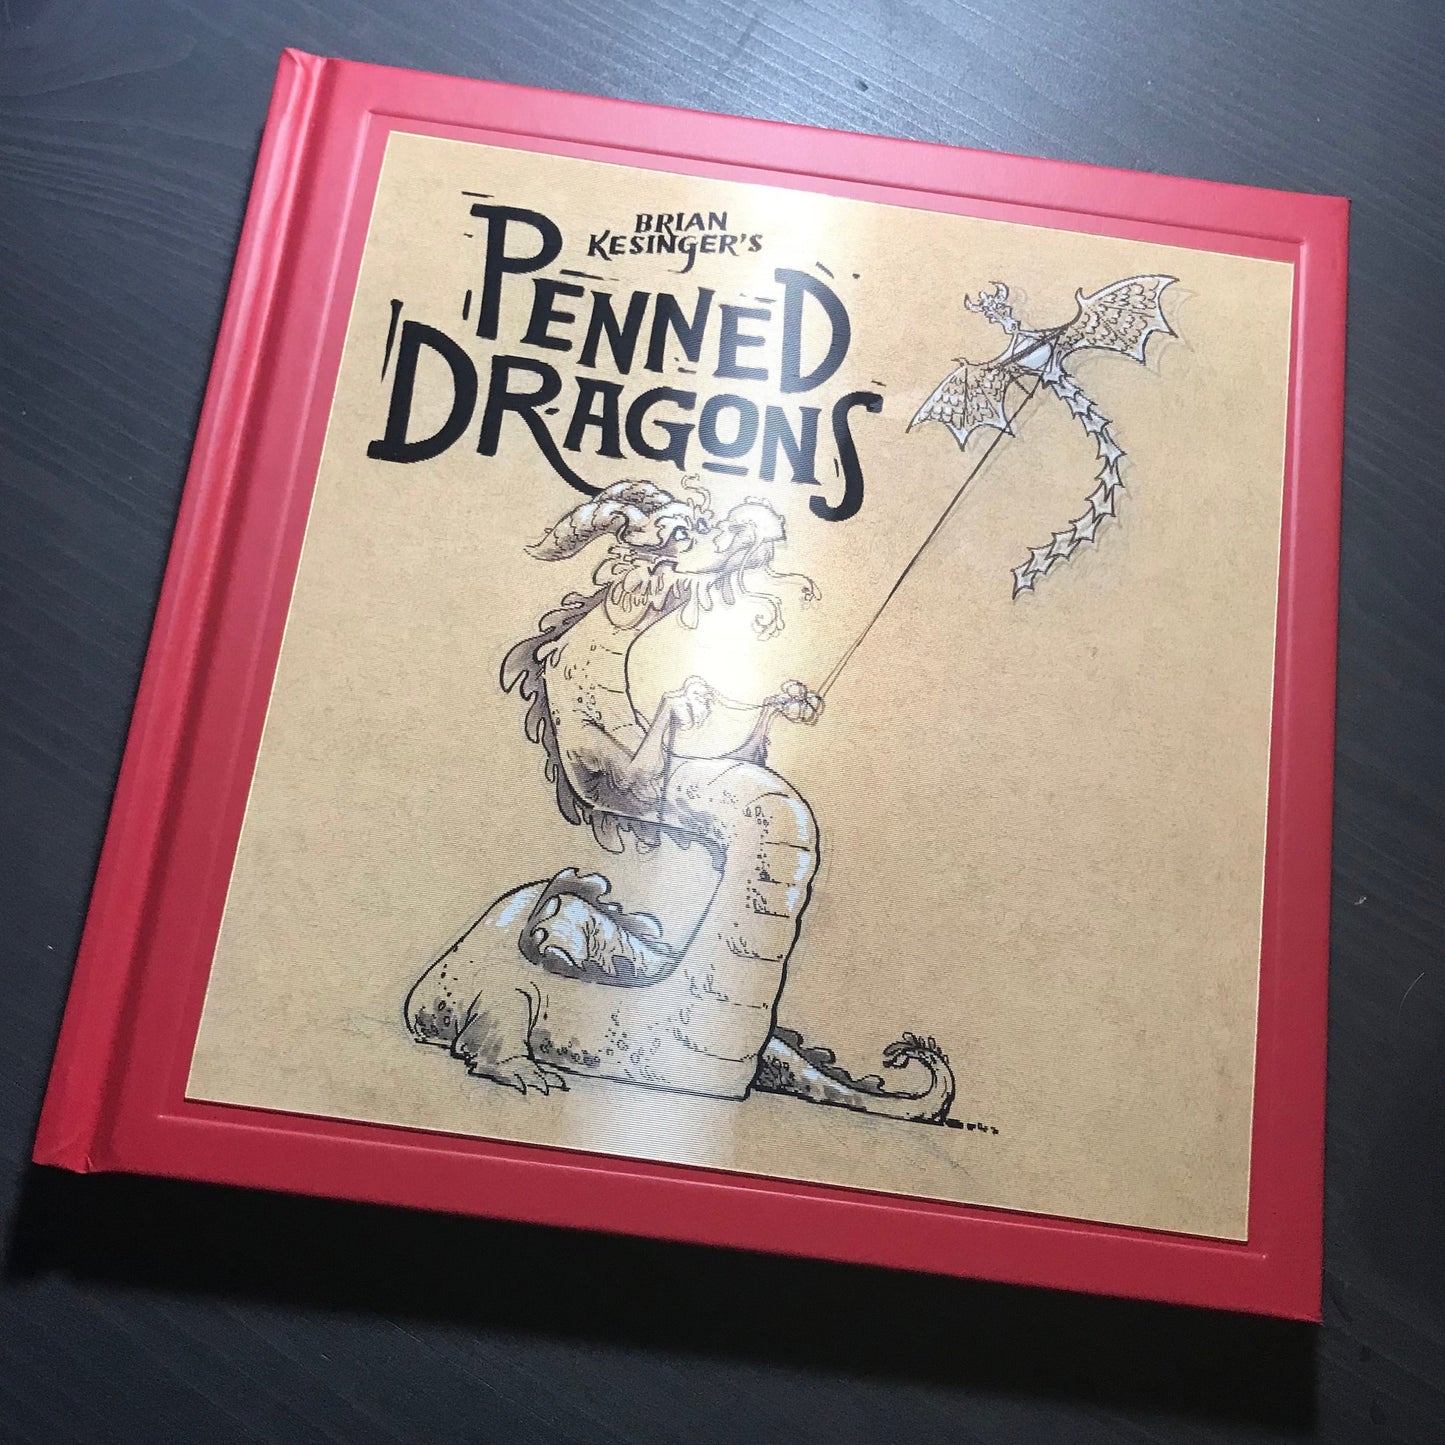 Brian Kesinger's Penned Dragons